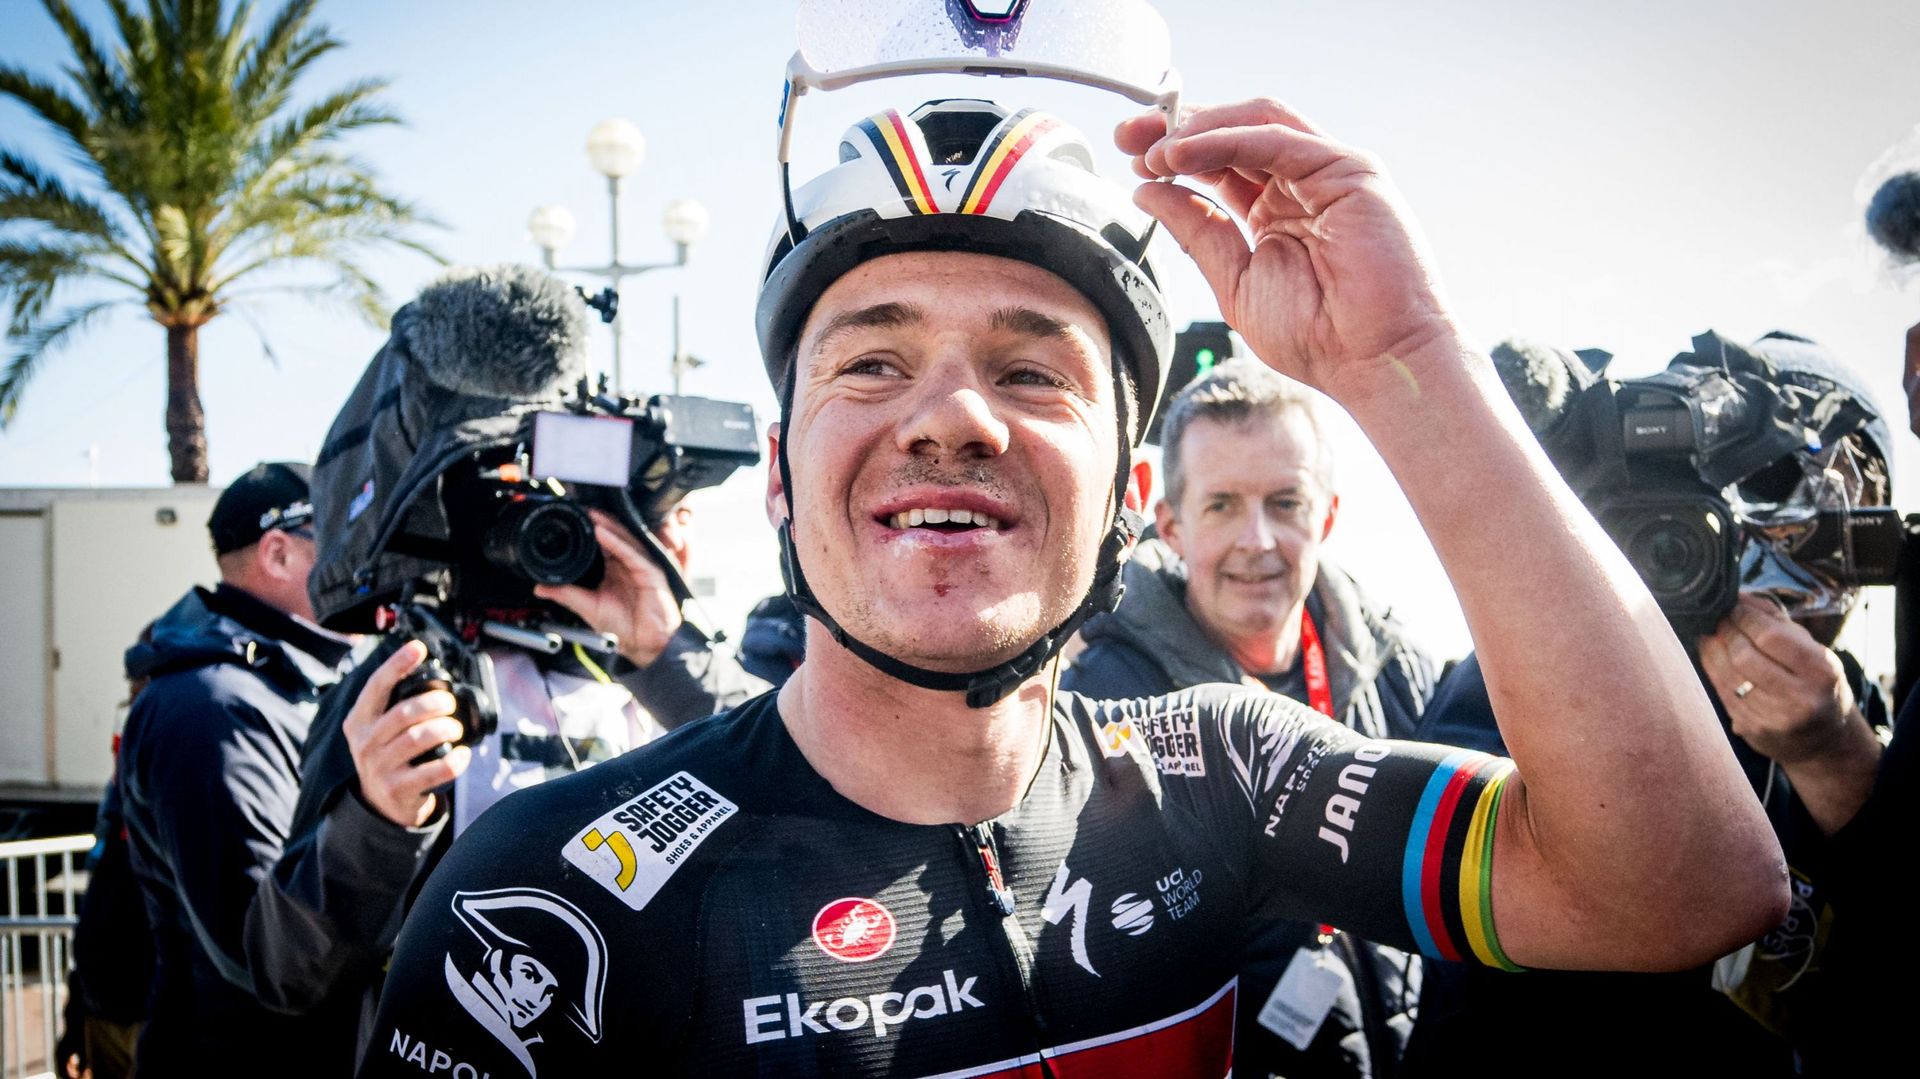 Cyclisme : La joie de Remco Evenepoel après sa victoire sur la dernière étape de Paris-Nice. Le champion belge va maintenant participer au Critérium du Dauphiné où il espère peaufiner sa forme et sa préparation avant le prochain Tour de France.  